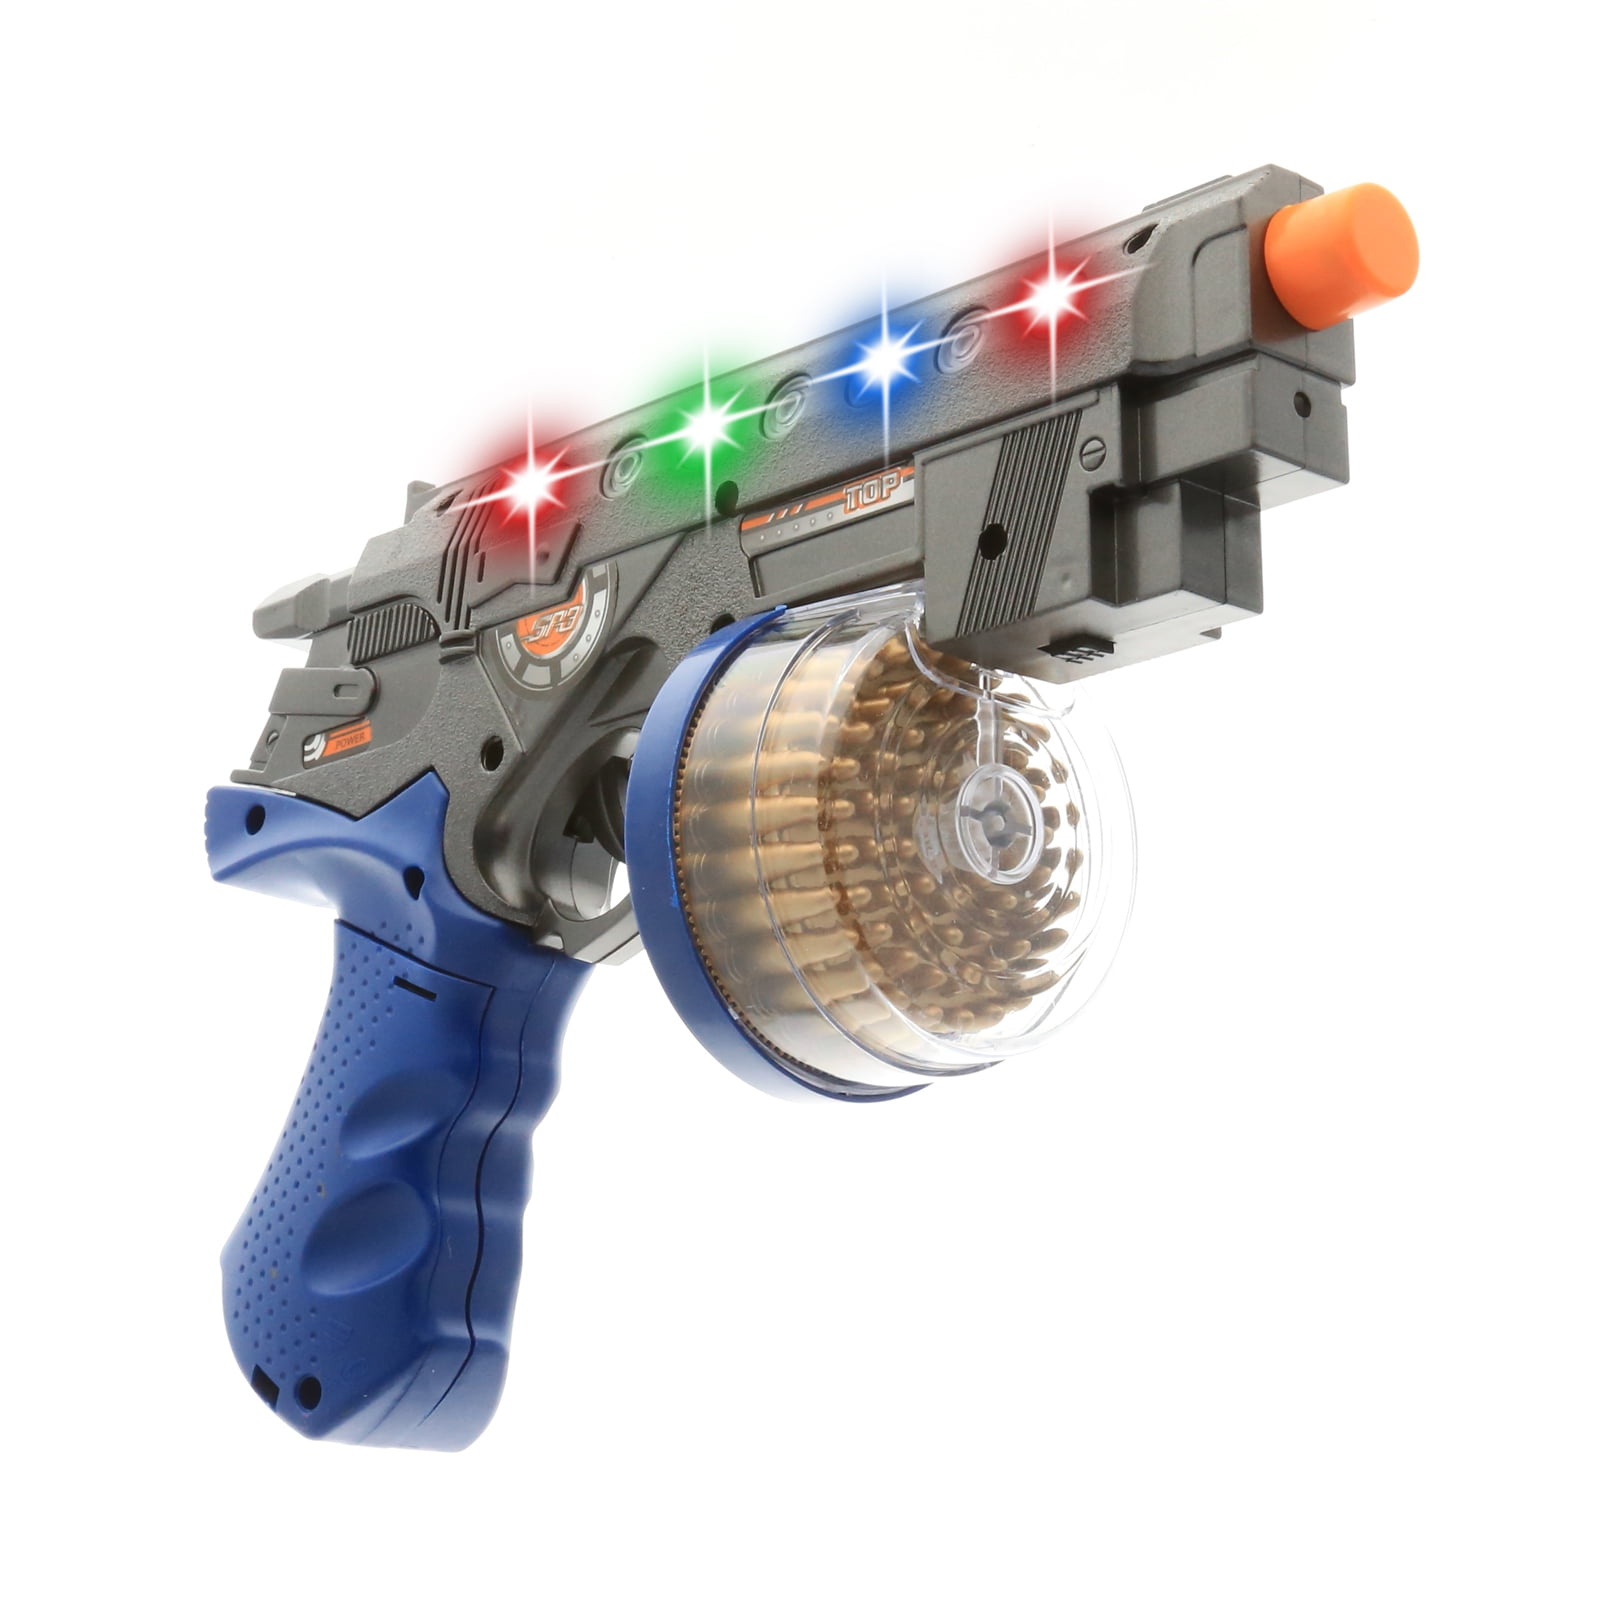 Children Toy Gun Light up Space Gun with Sound Fun Game Kids Toy Pistol 